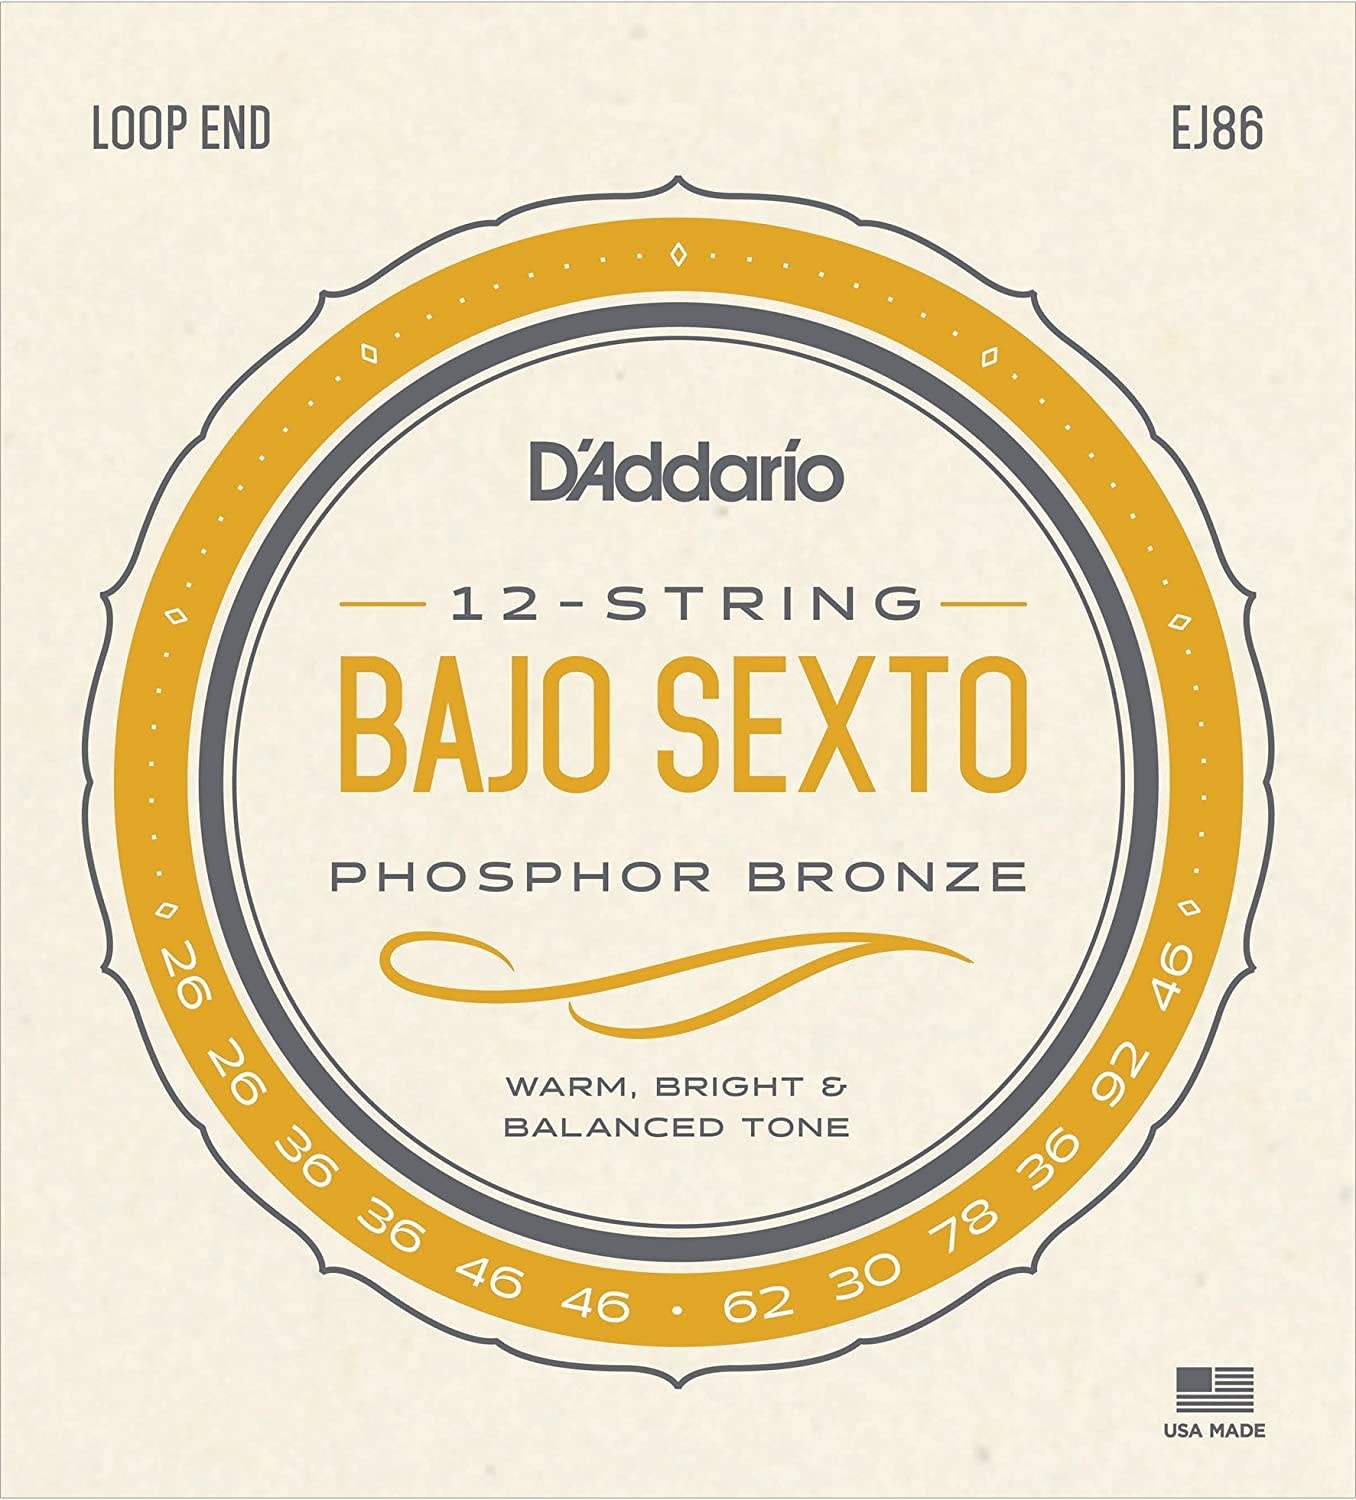 D'addario EJ86 Bajo Sexto Strings Phosphor Bronze Loop End-1